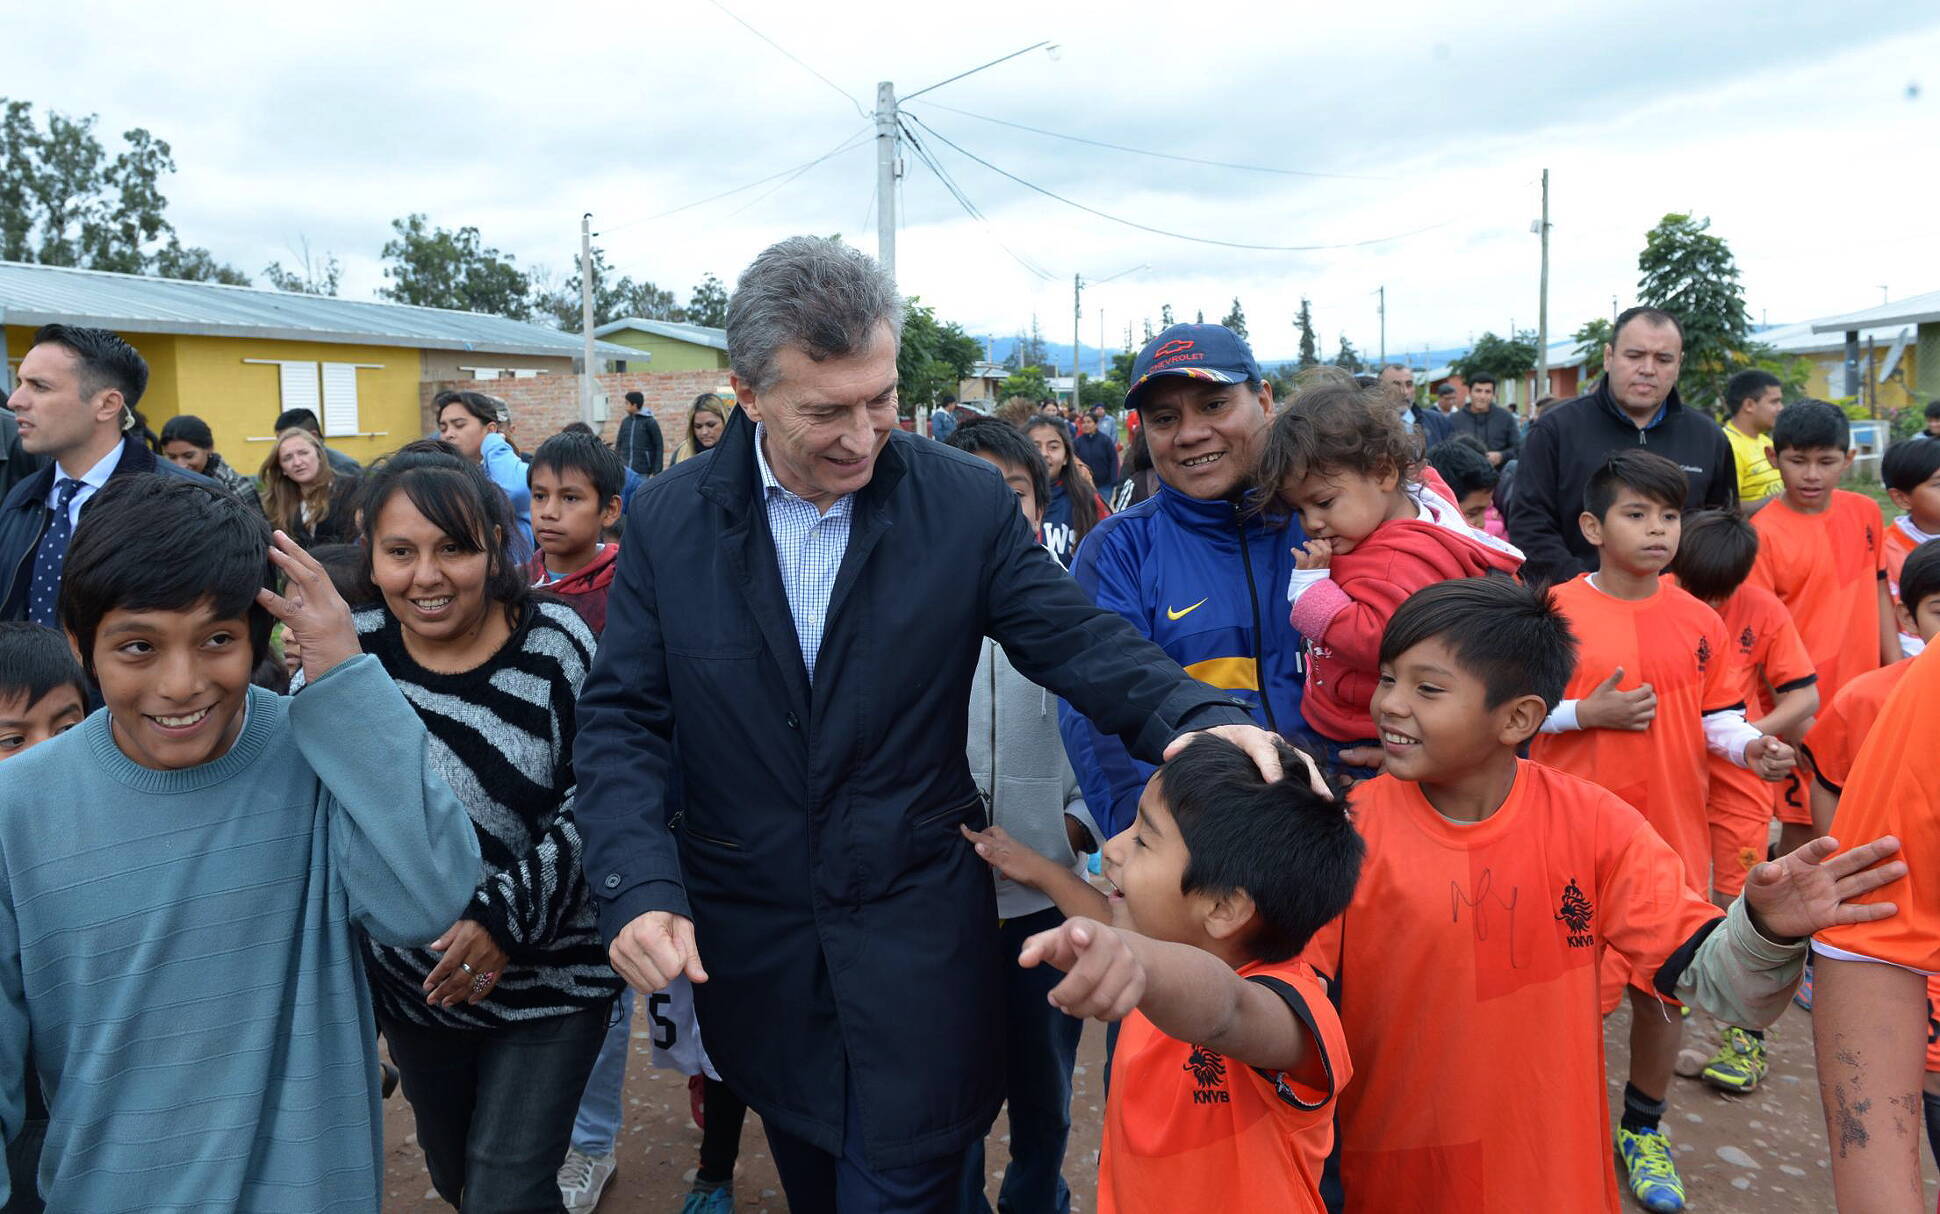 Mauricio Macri, en Jujuy: Se terminó el abandono para el norte argentino